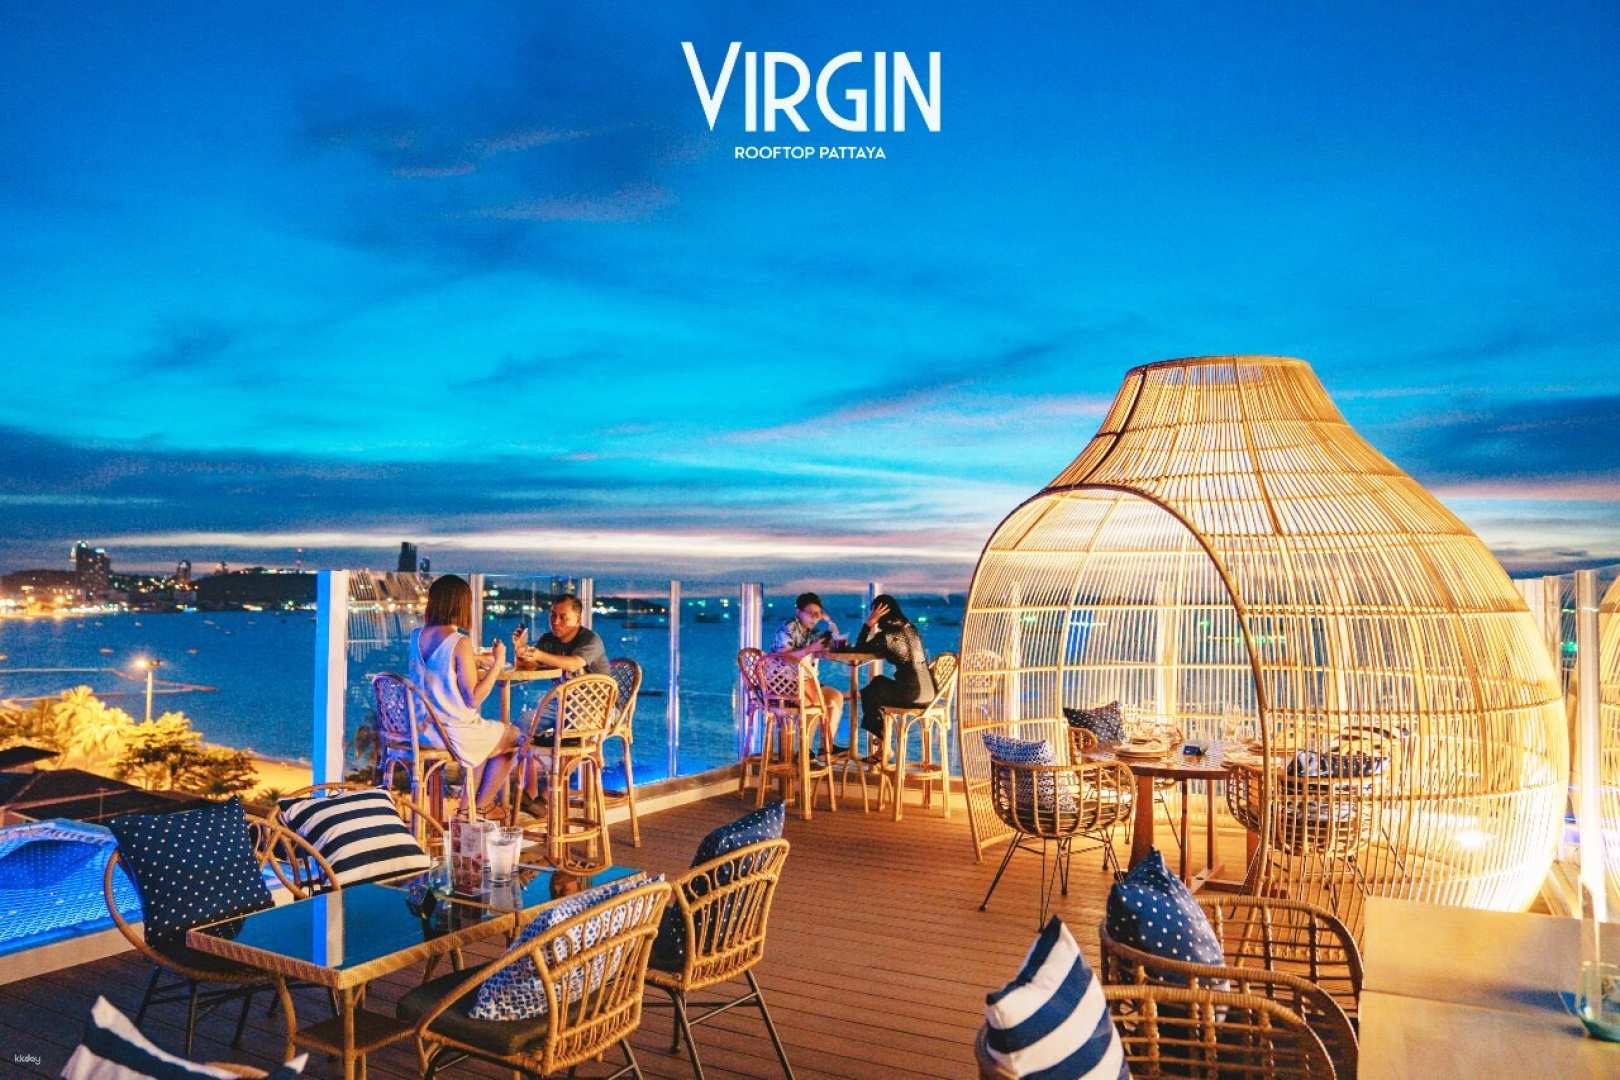 泰國-芭達雅維珍屋頂酒店  Virgin Rooftop 屋頂用餐